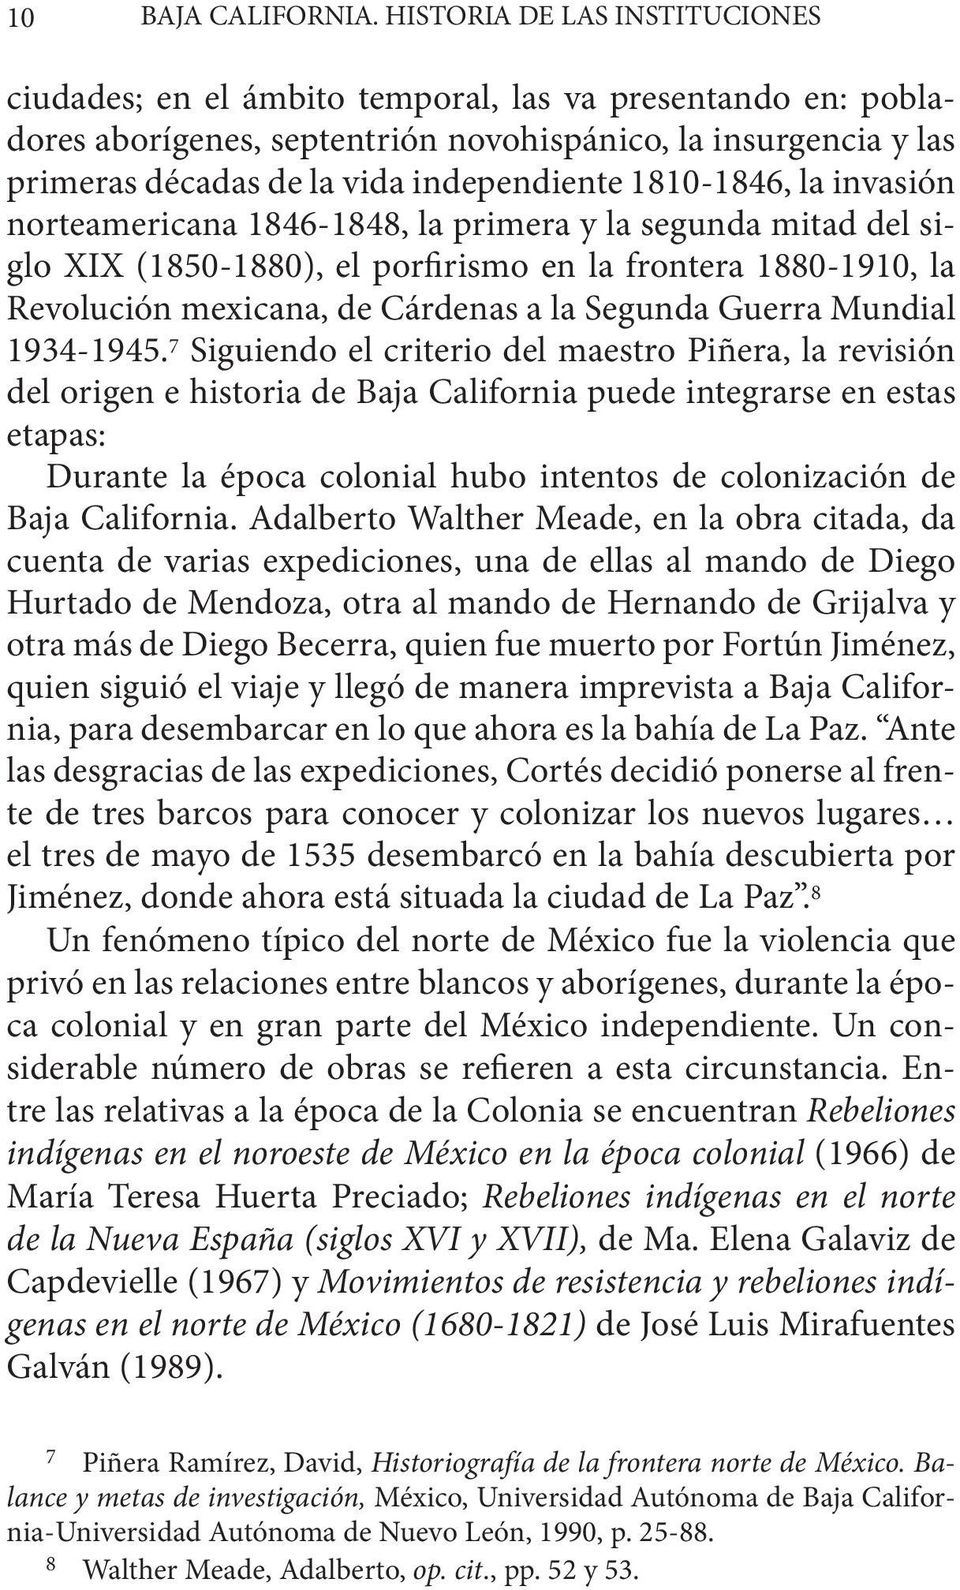 1810-1846, la invasión norteamericana 1846-1848, la primera y la segunda mitad del siglo XIX (1850-1880), el porfirismo en la frontera 1880-1910, la Revolución mexicana, de Cárdenas a la Segunda